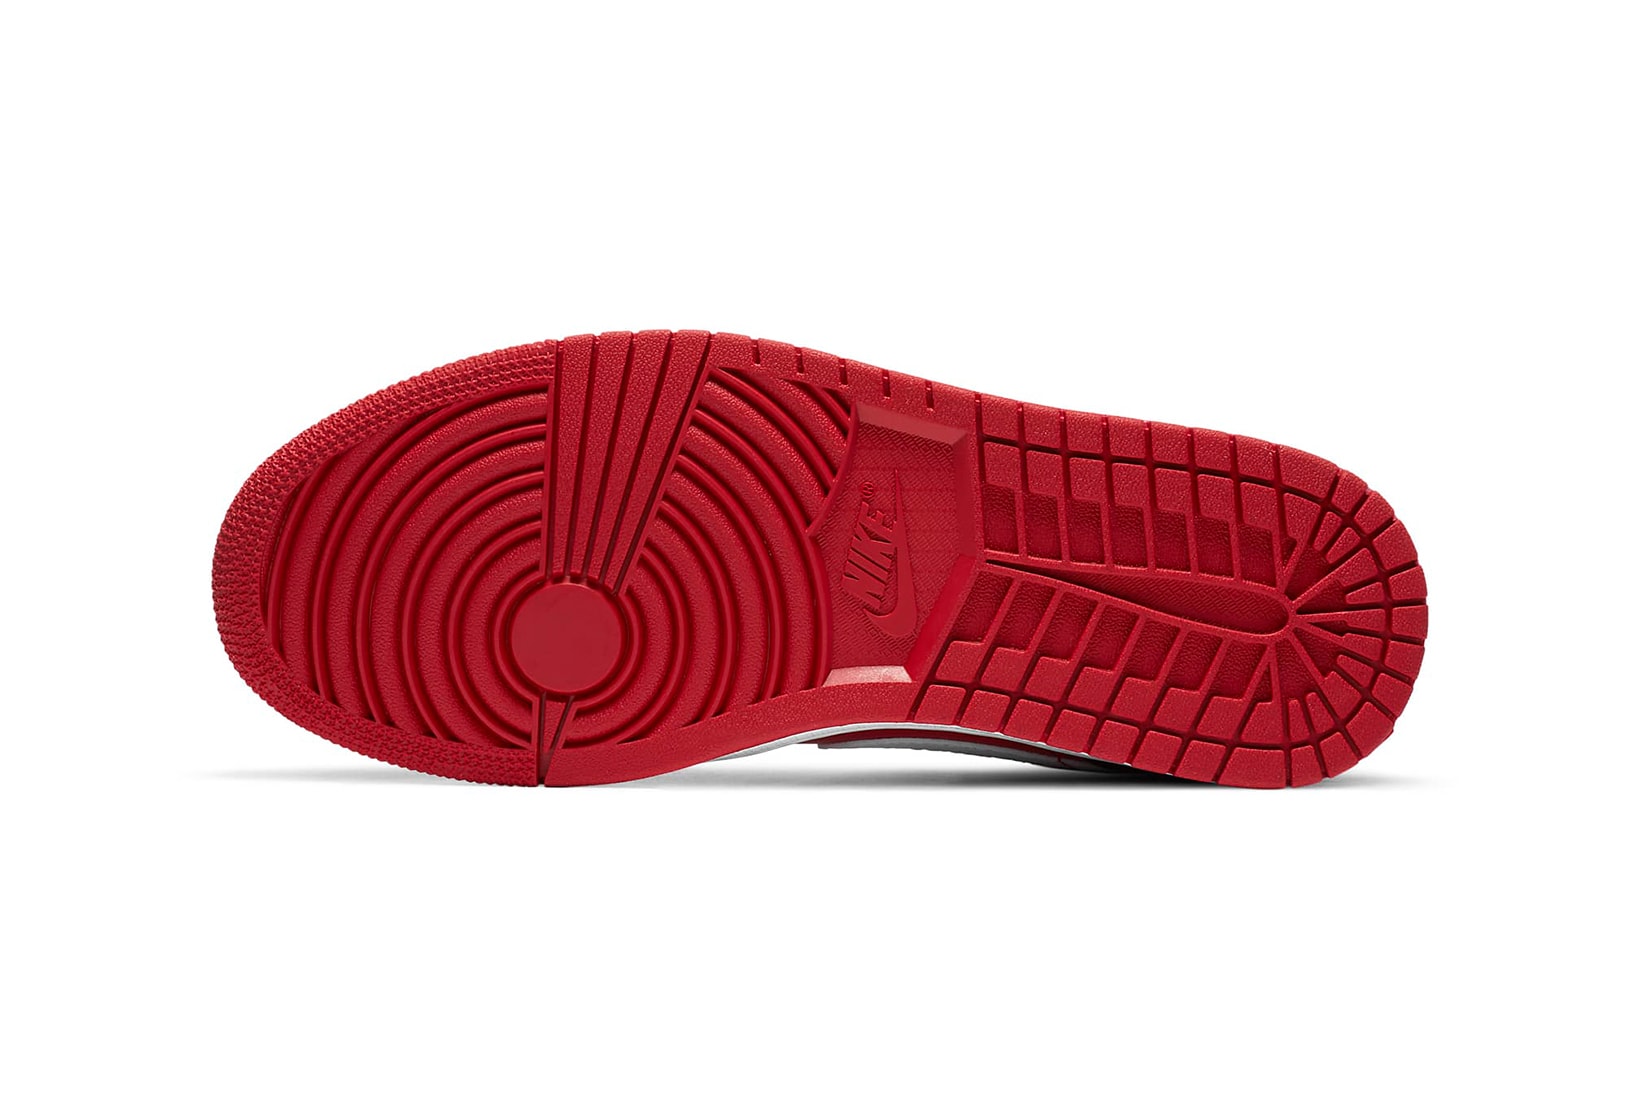 nike air jordan 1 low womens sneakers red black white colorway shoes footwear sneakerhead